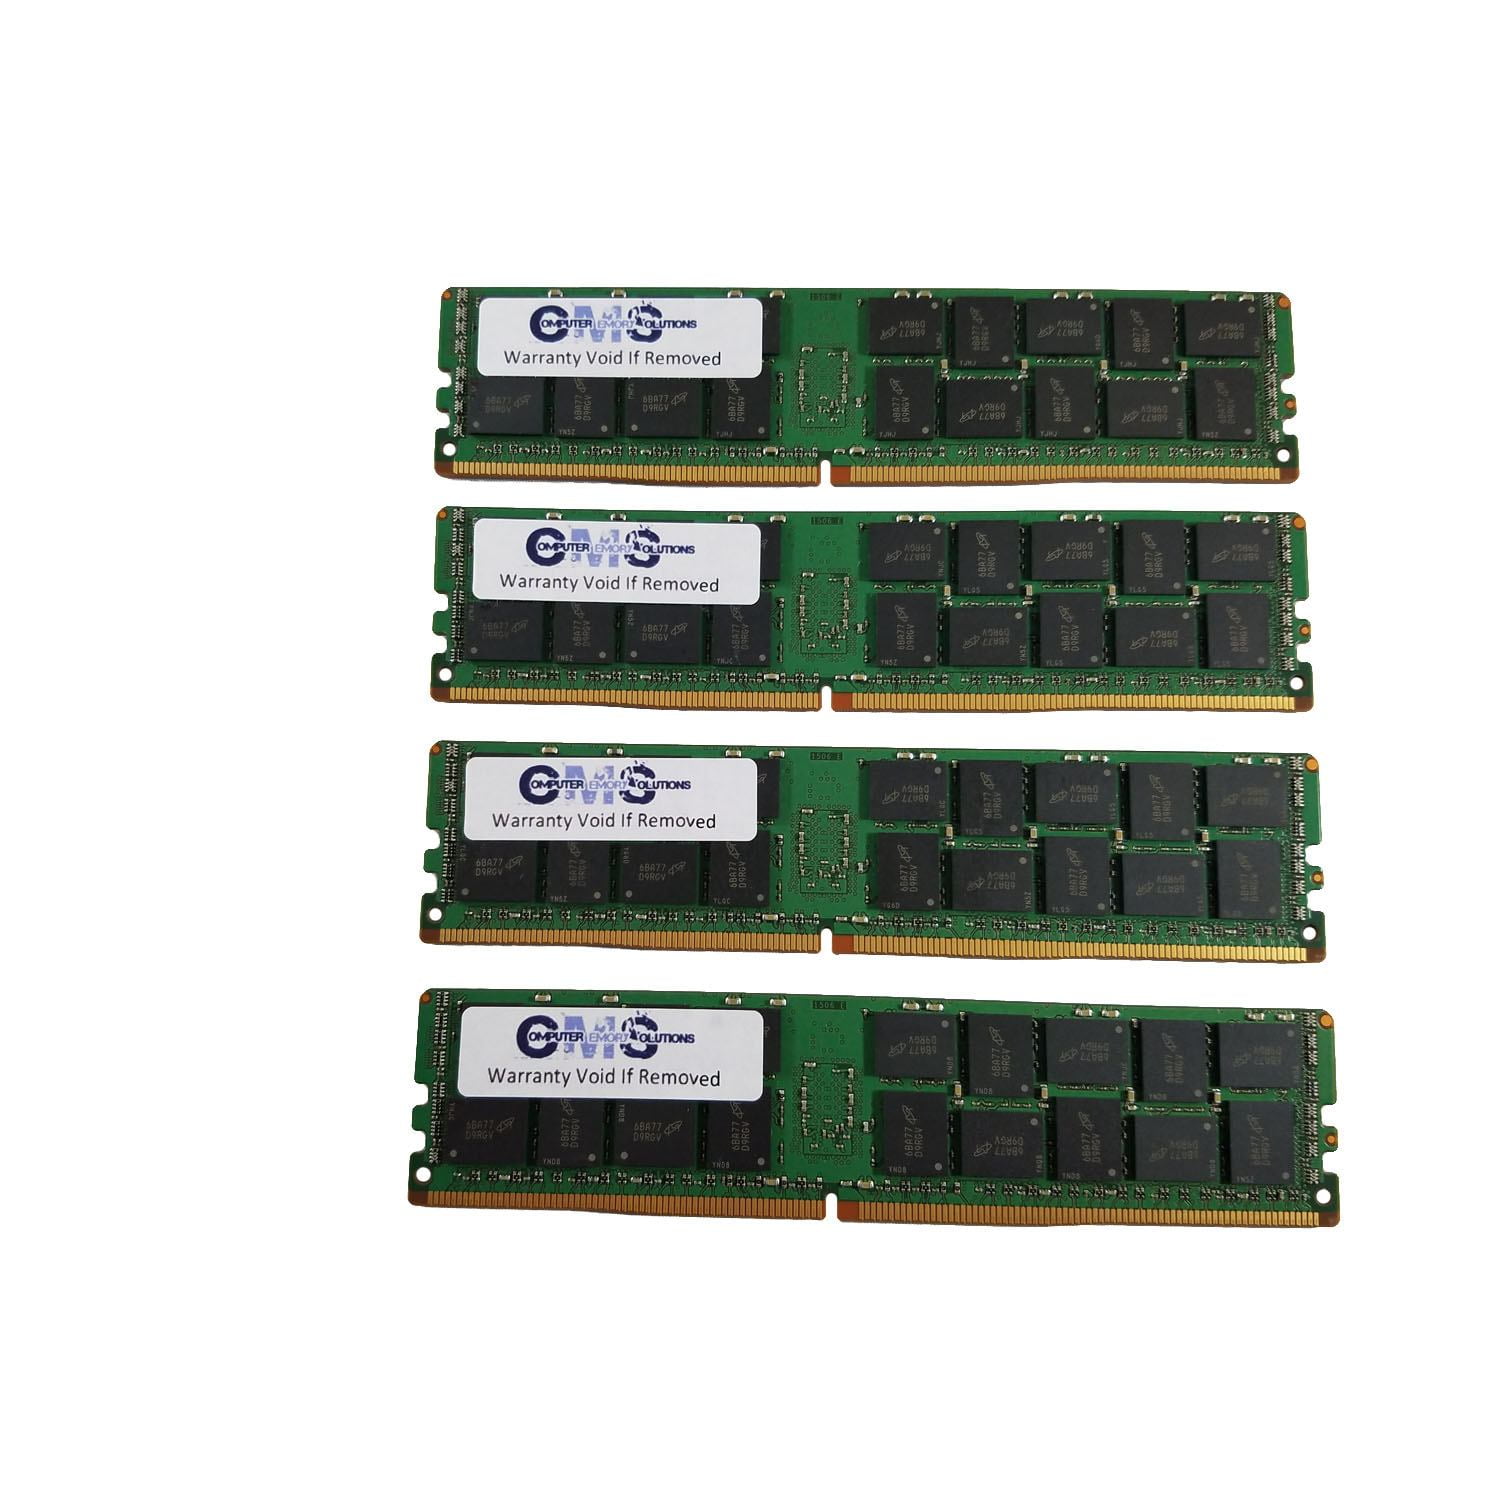 4GB DIMM Gigabyte GA-870A-USB3L GA-870-UD3P GA-880GA-UD3H PC3-8500 Ram Memory 